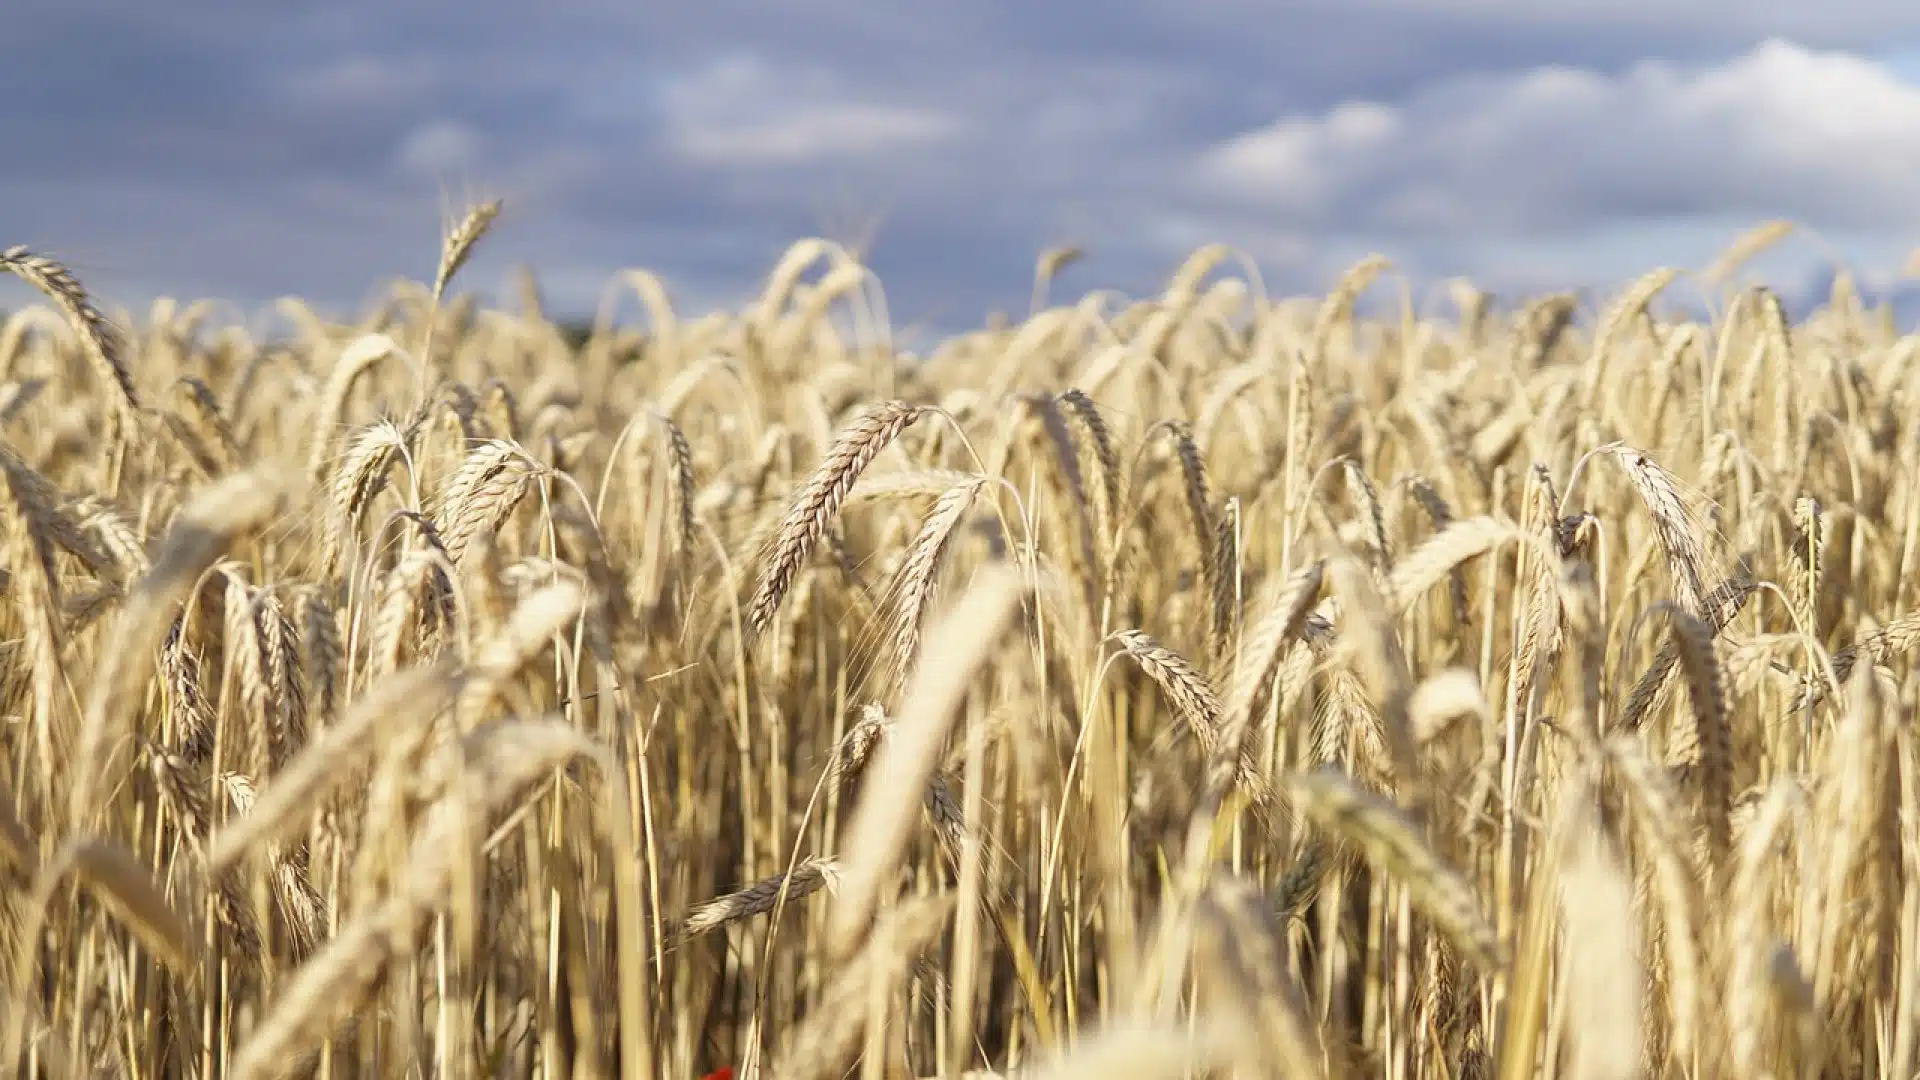 Ray-grass sur blé : 4 façons pour lutter contre cette adventice